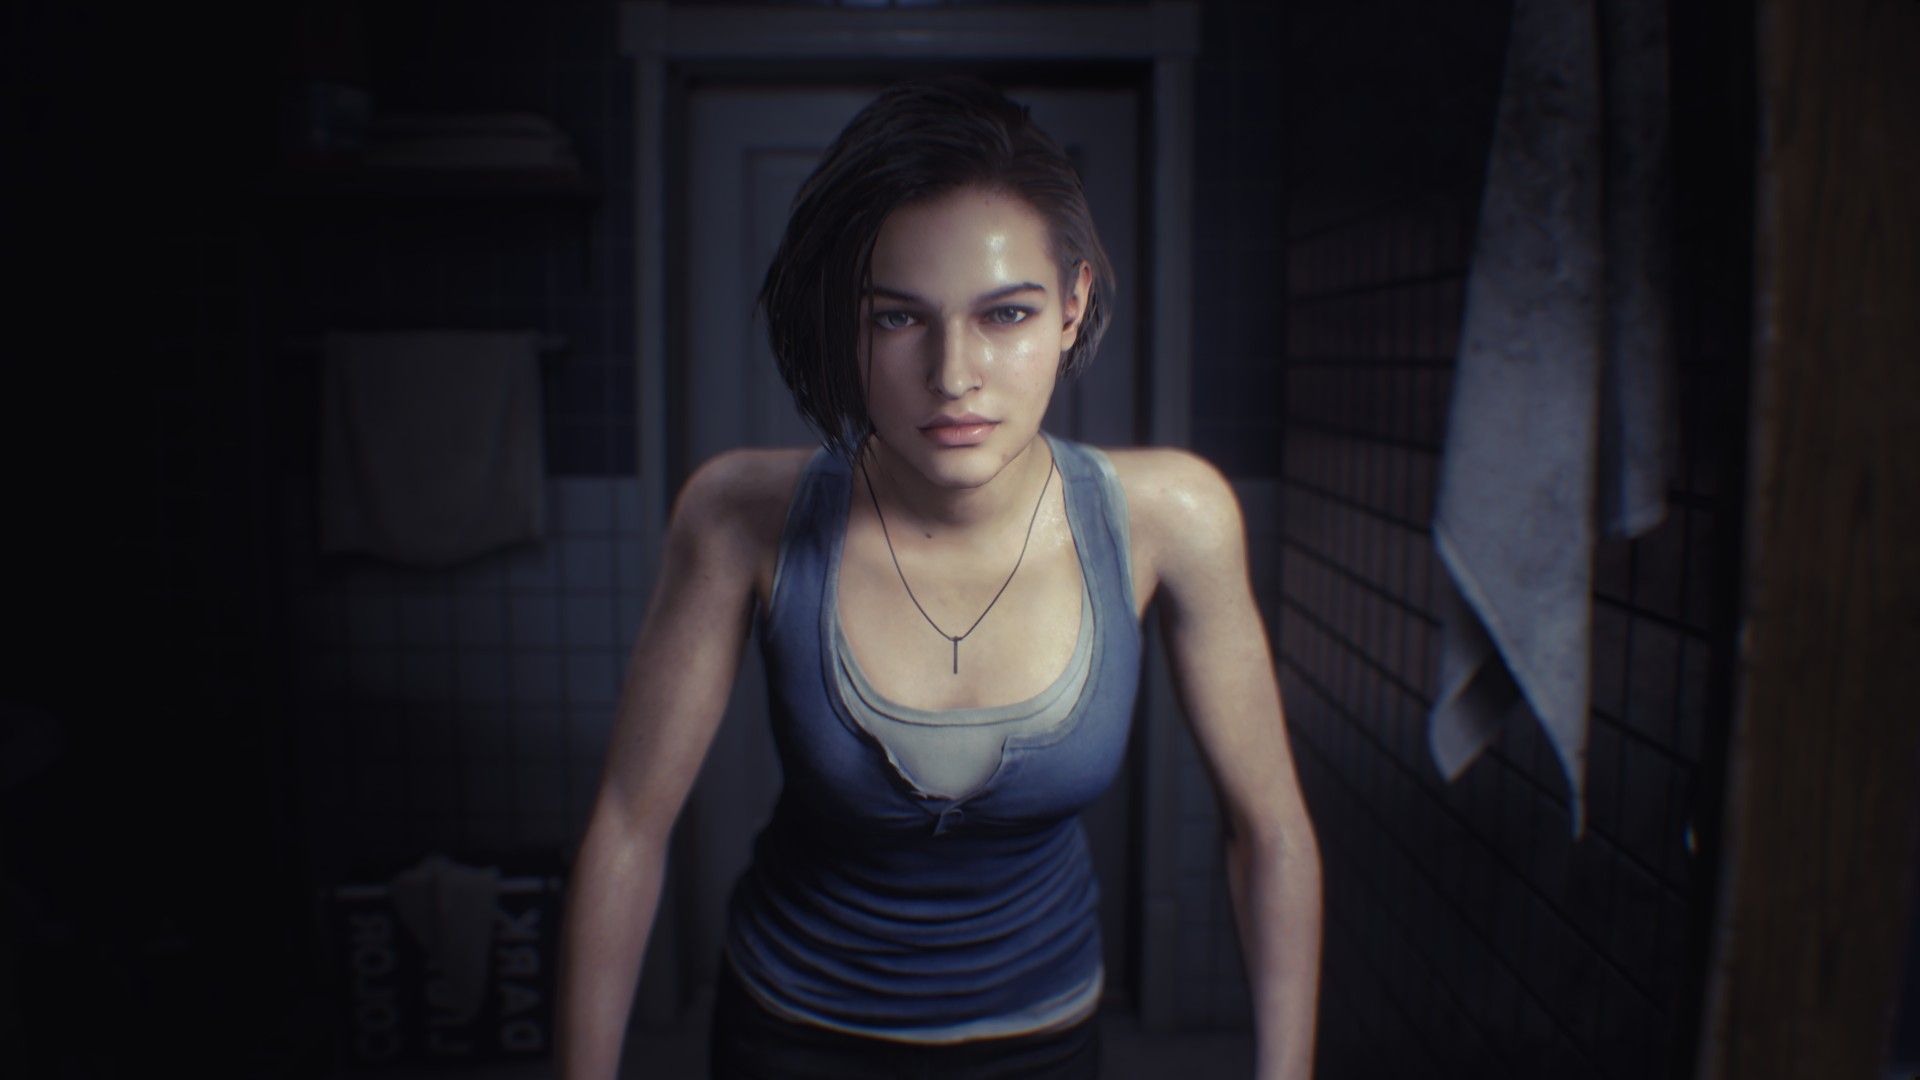 New screenshots for the Resident Evil 3 Remake, Resident Evil 3: Nemesis